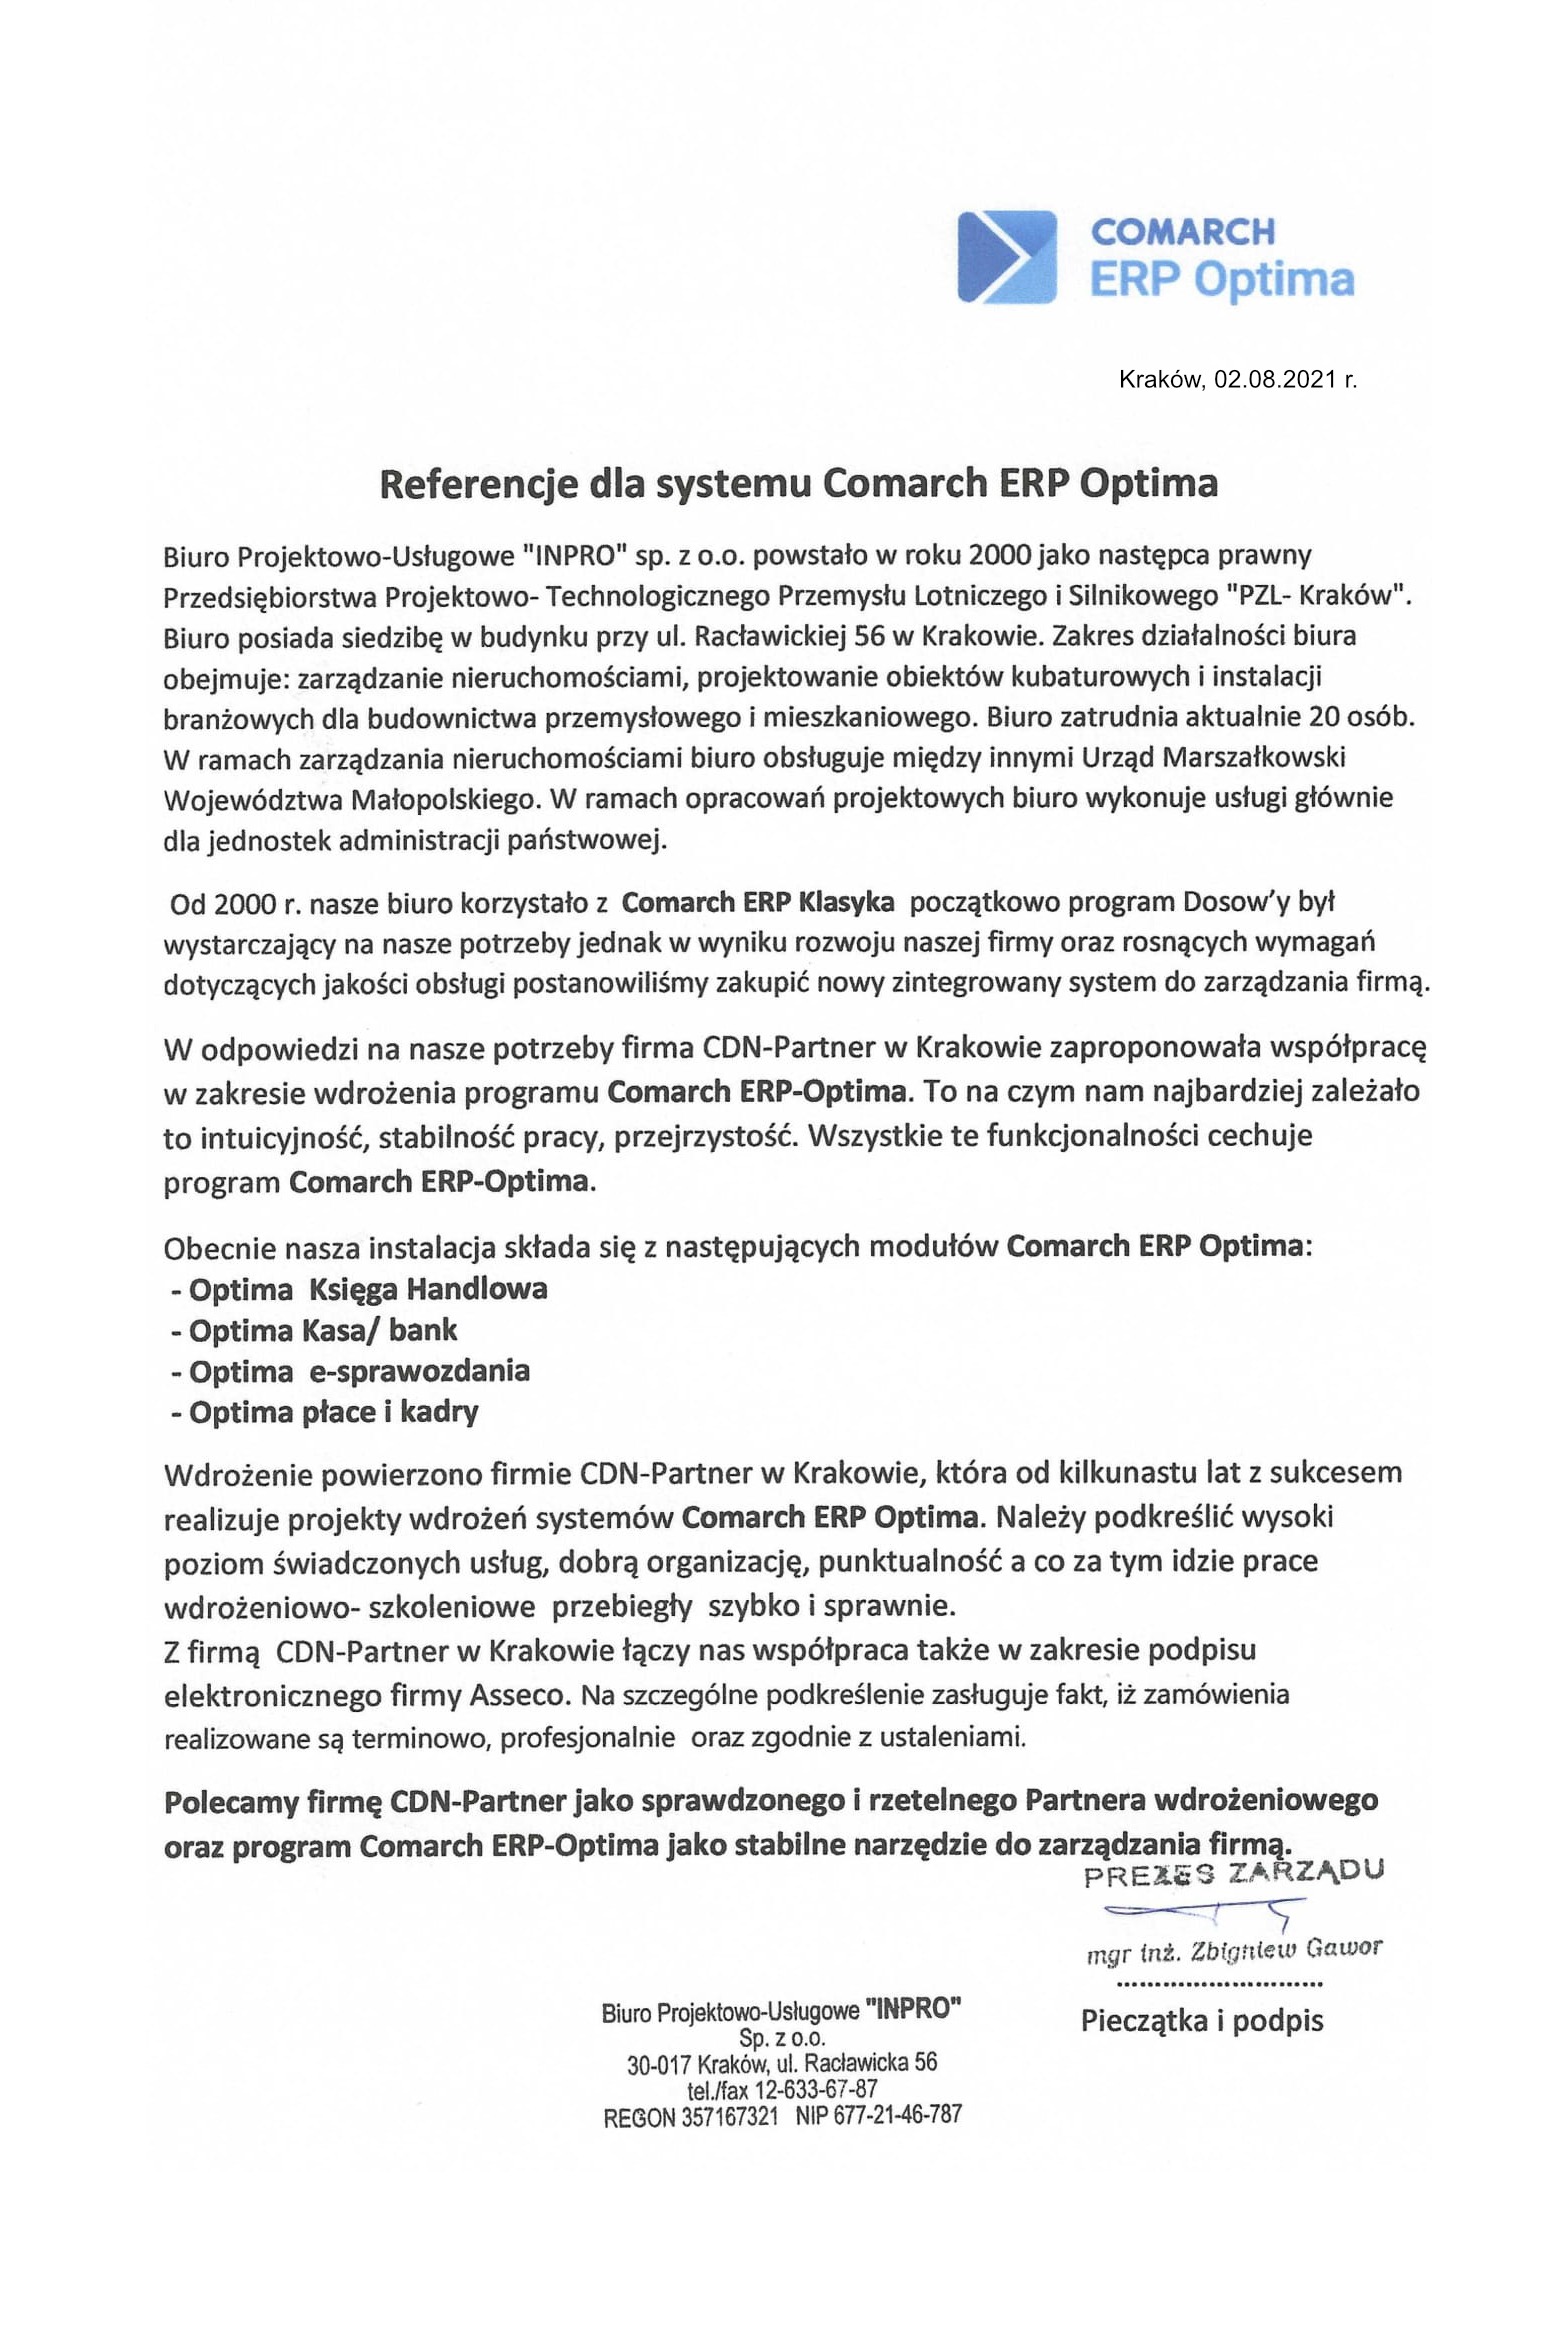 Referencje od Biuro Projektowo-Usługowe INPRO dla systemy Comarch ERP Optima